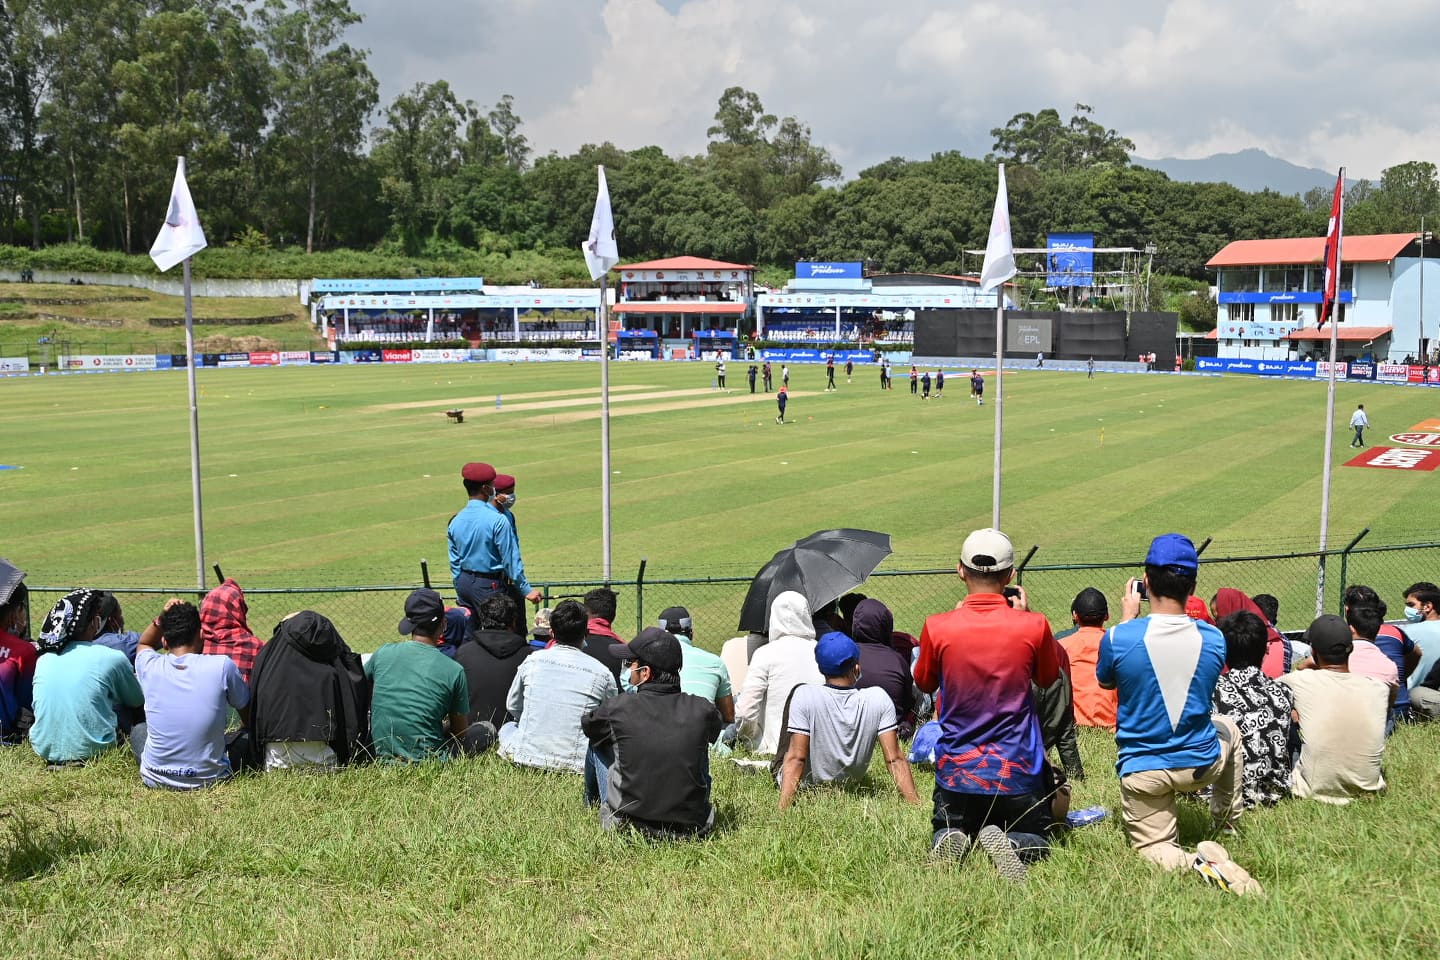 EPL Cricket: Biratnagar set a target of 152 runs for Chitwan